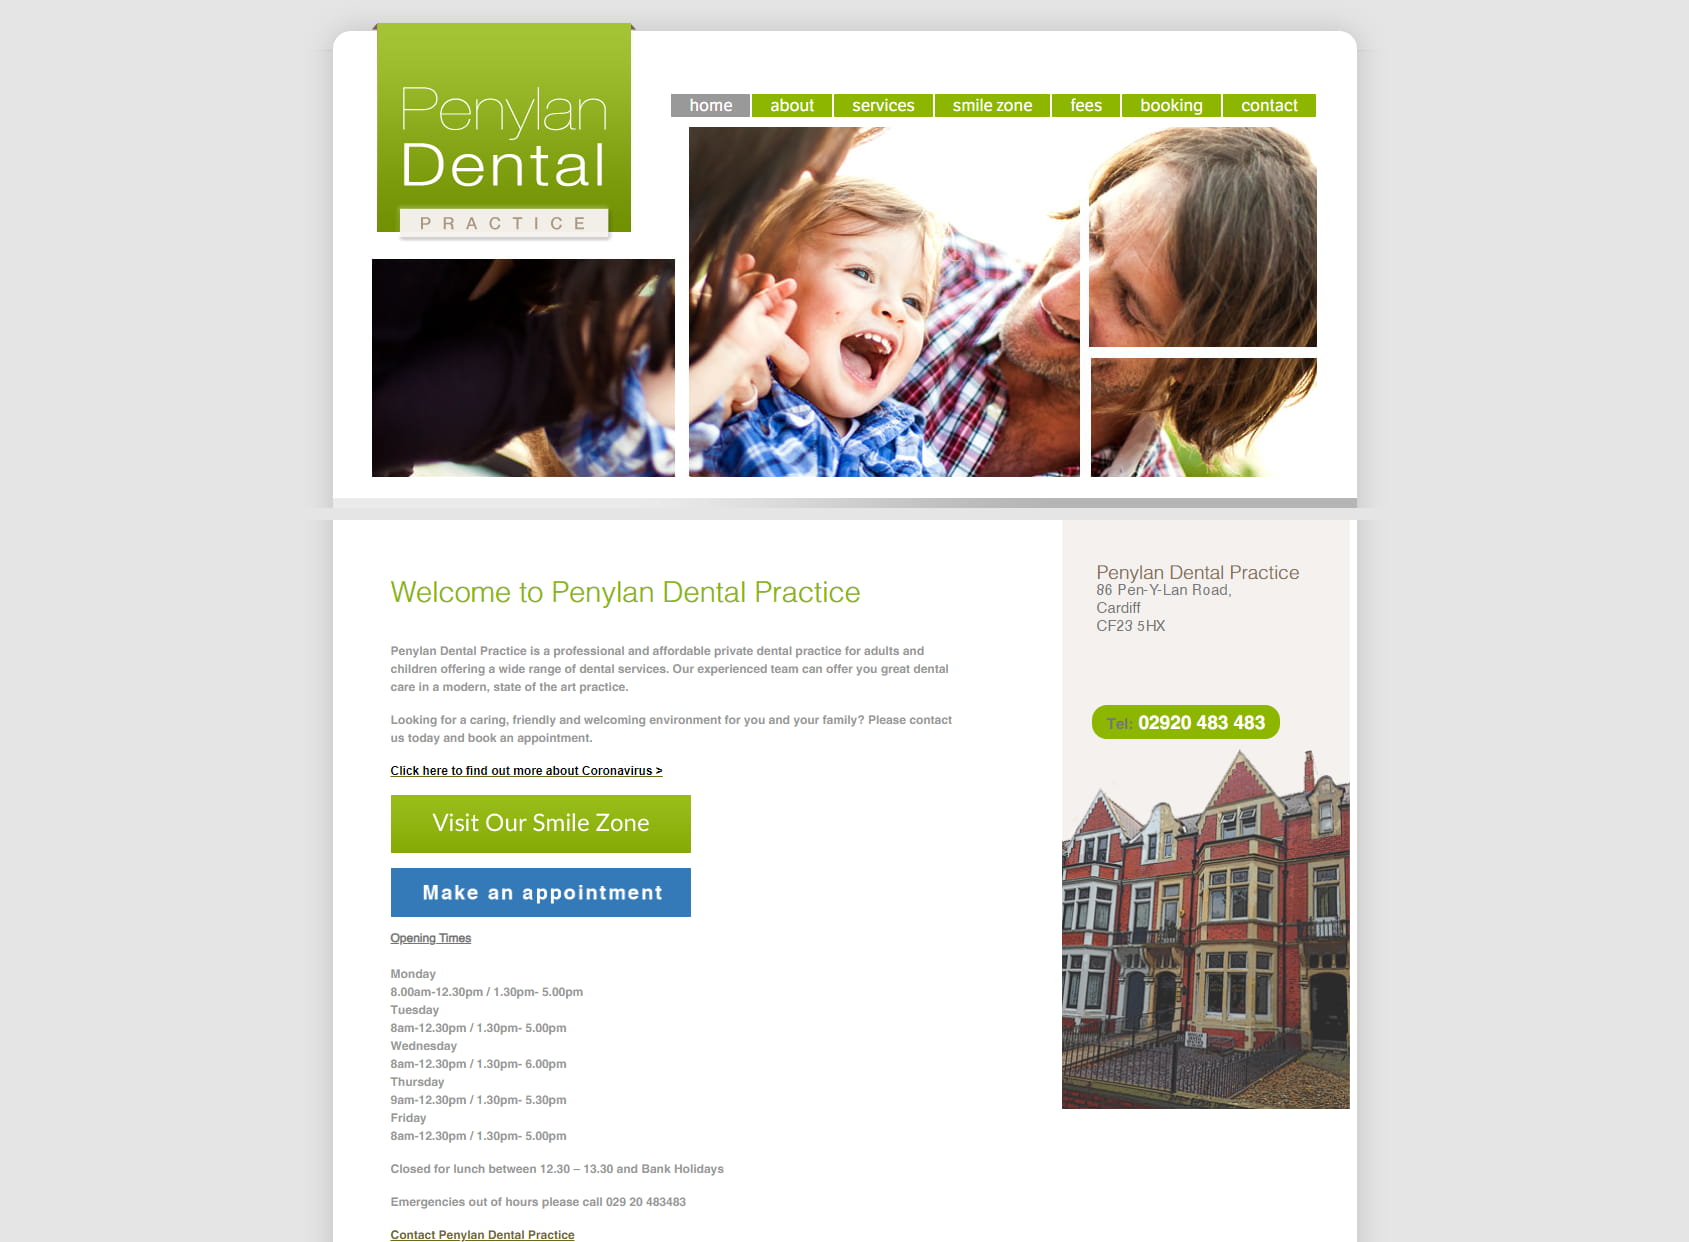 Penylan Dental Practice